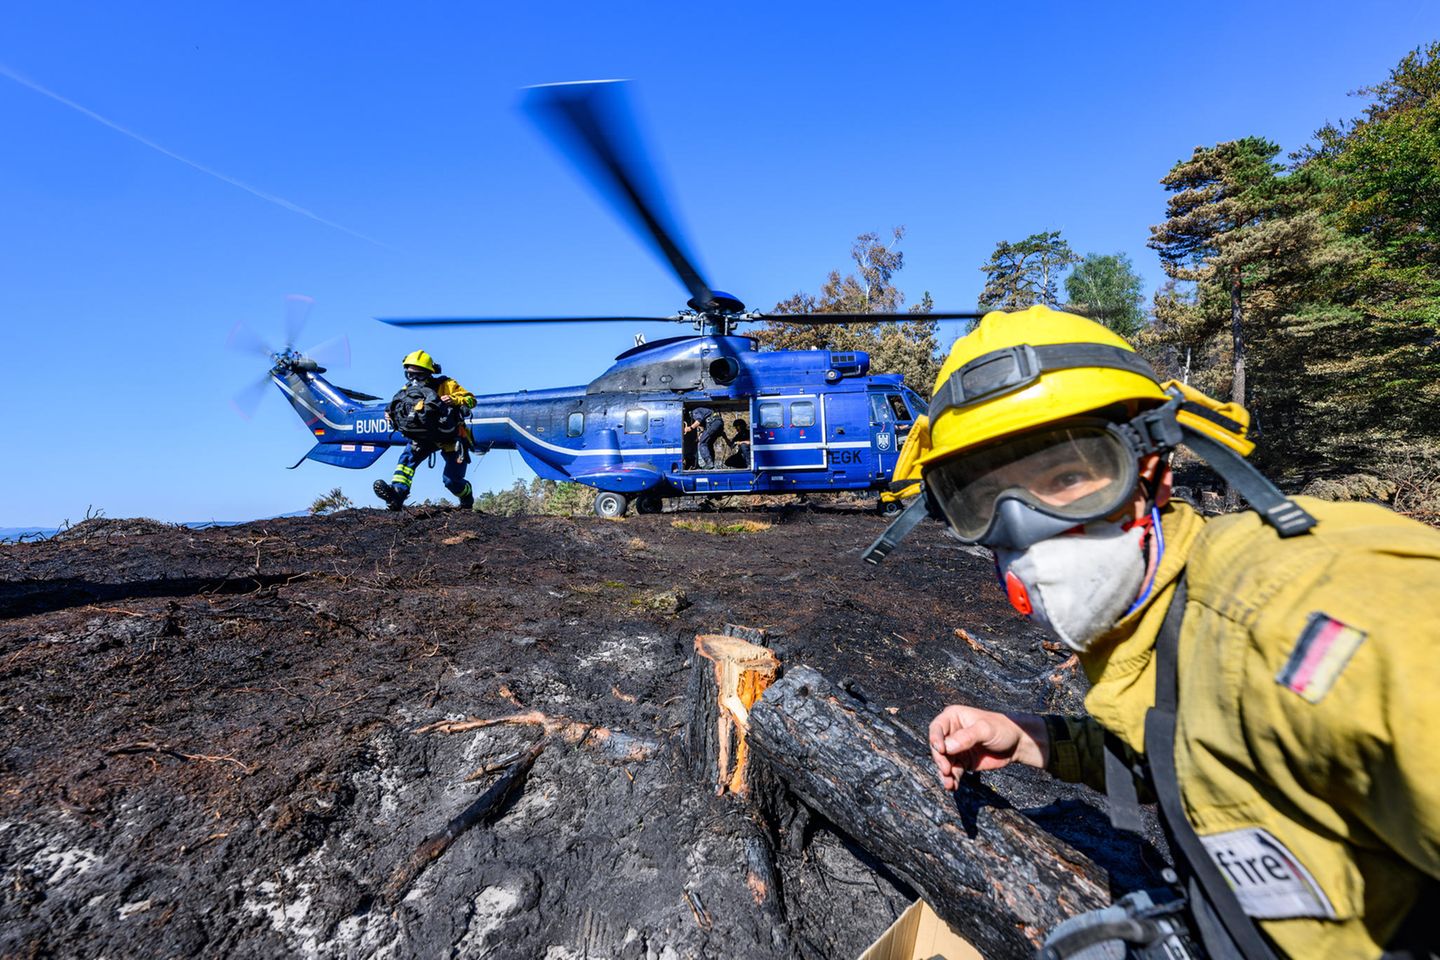 Sie werden von freiwilligen Feuerwehrleuten des Internationalen Katastrophenschutzes Deutschland unterstützt, die am Boden nach verbleibenden Glutnester suchen und diese löschen